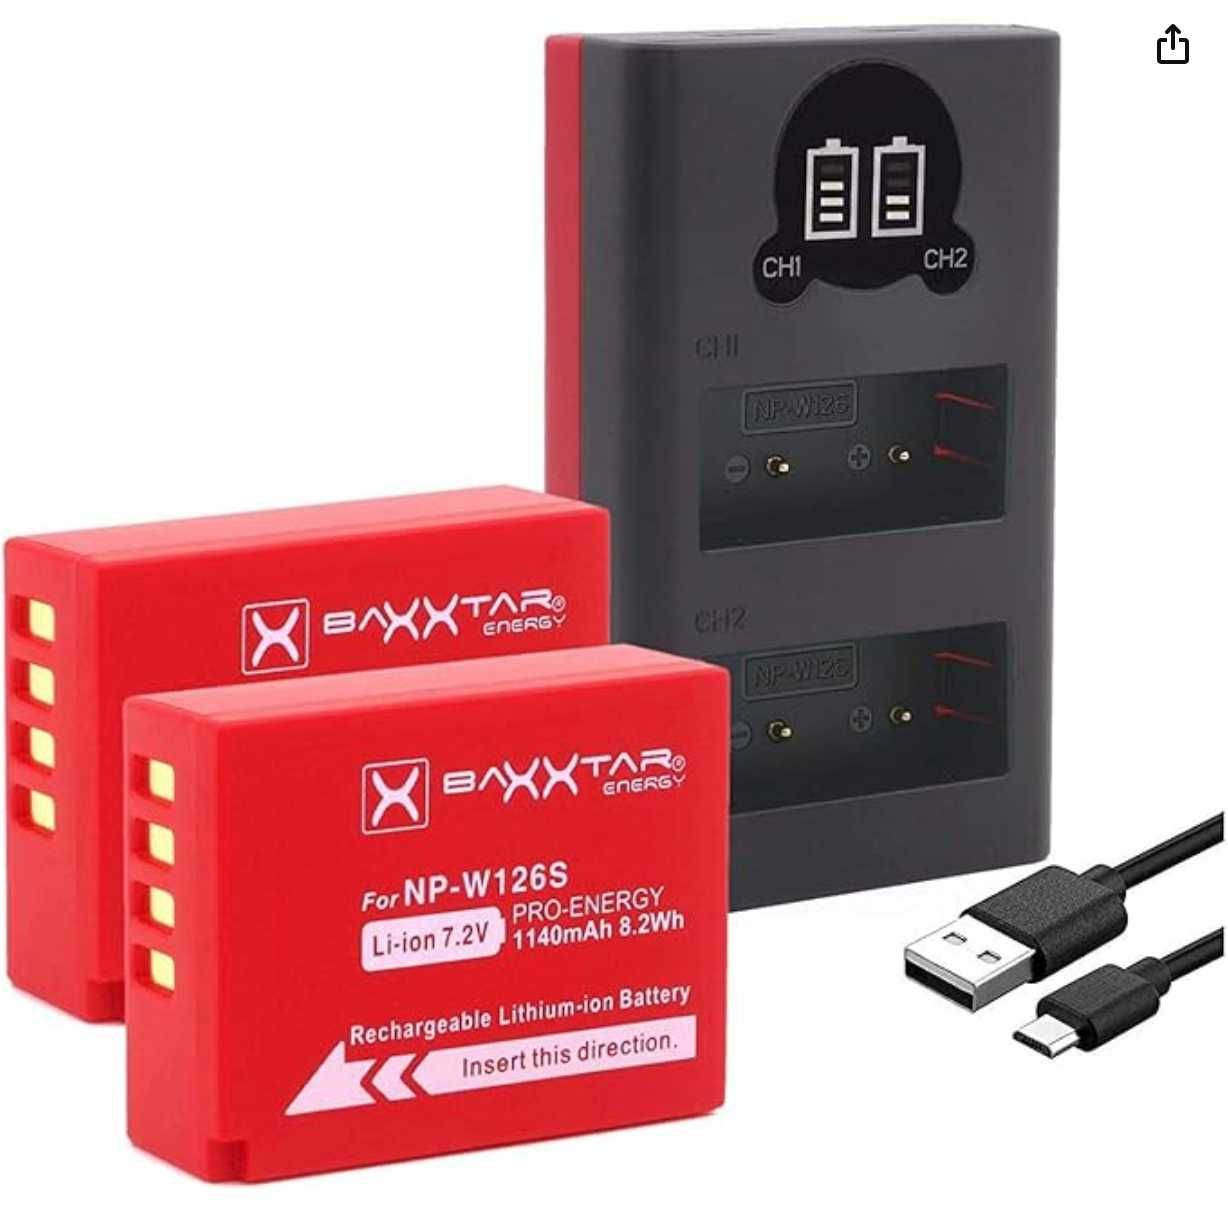 Fuji XT3 (Fujifilm X-T3) + Cage + 3 Baterias + Carregador USB duplo